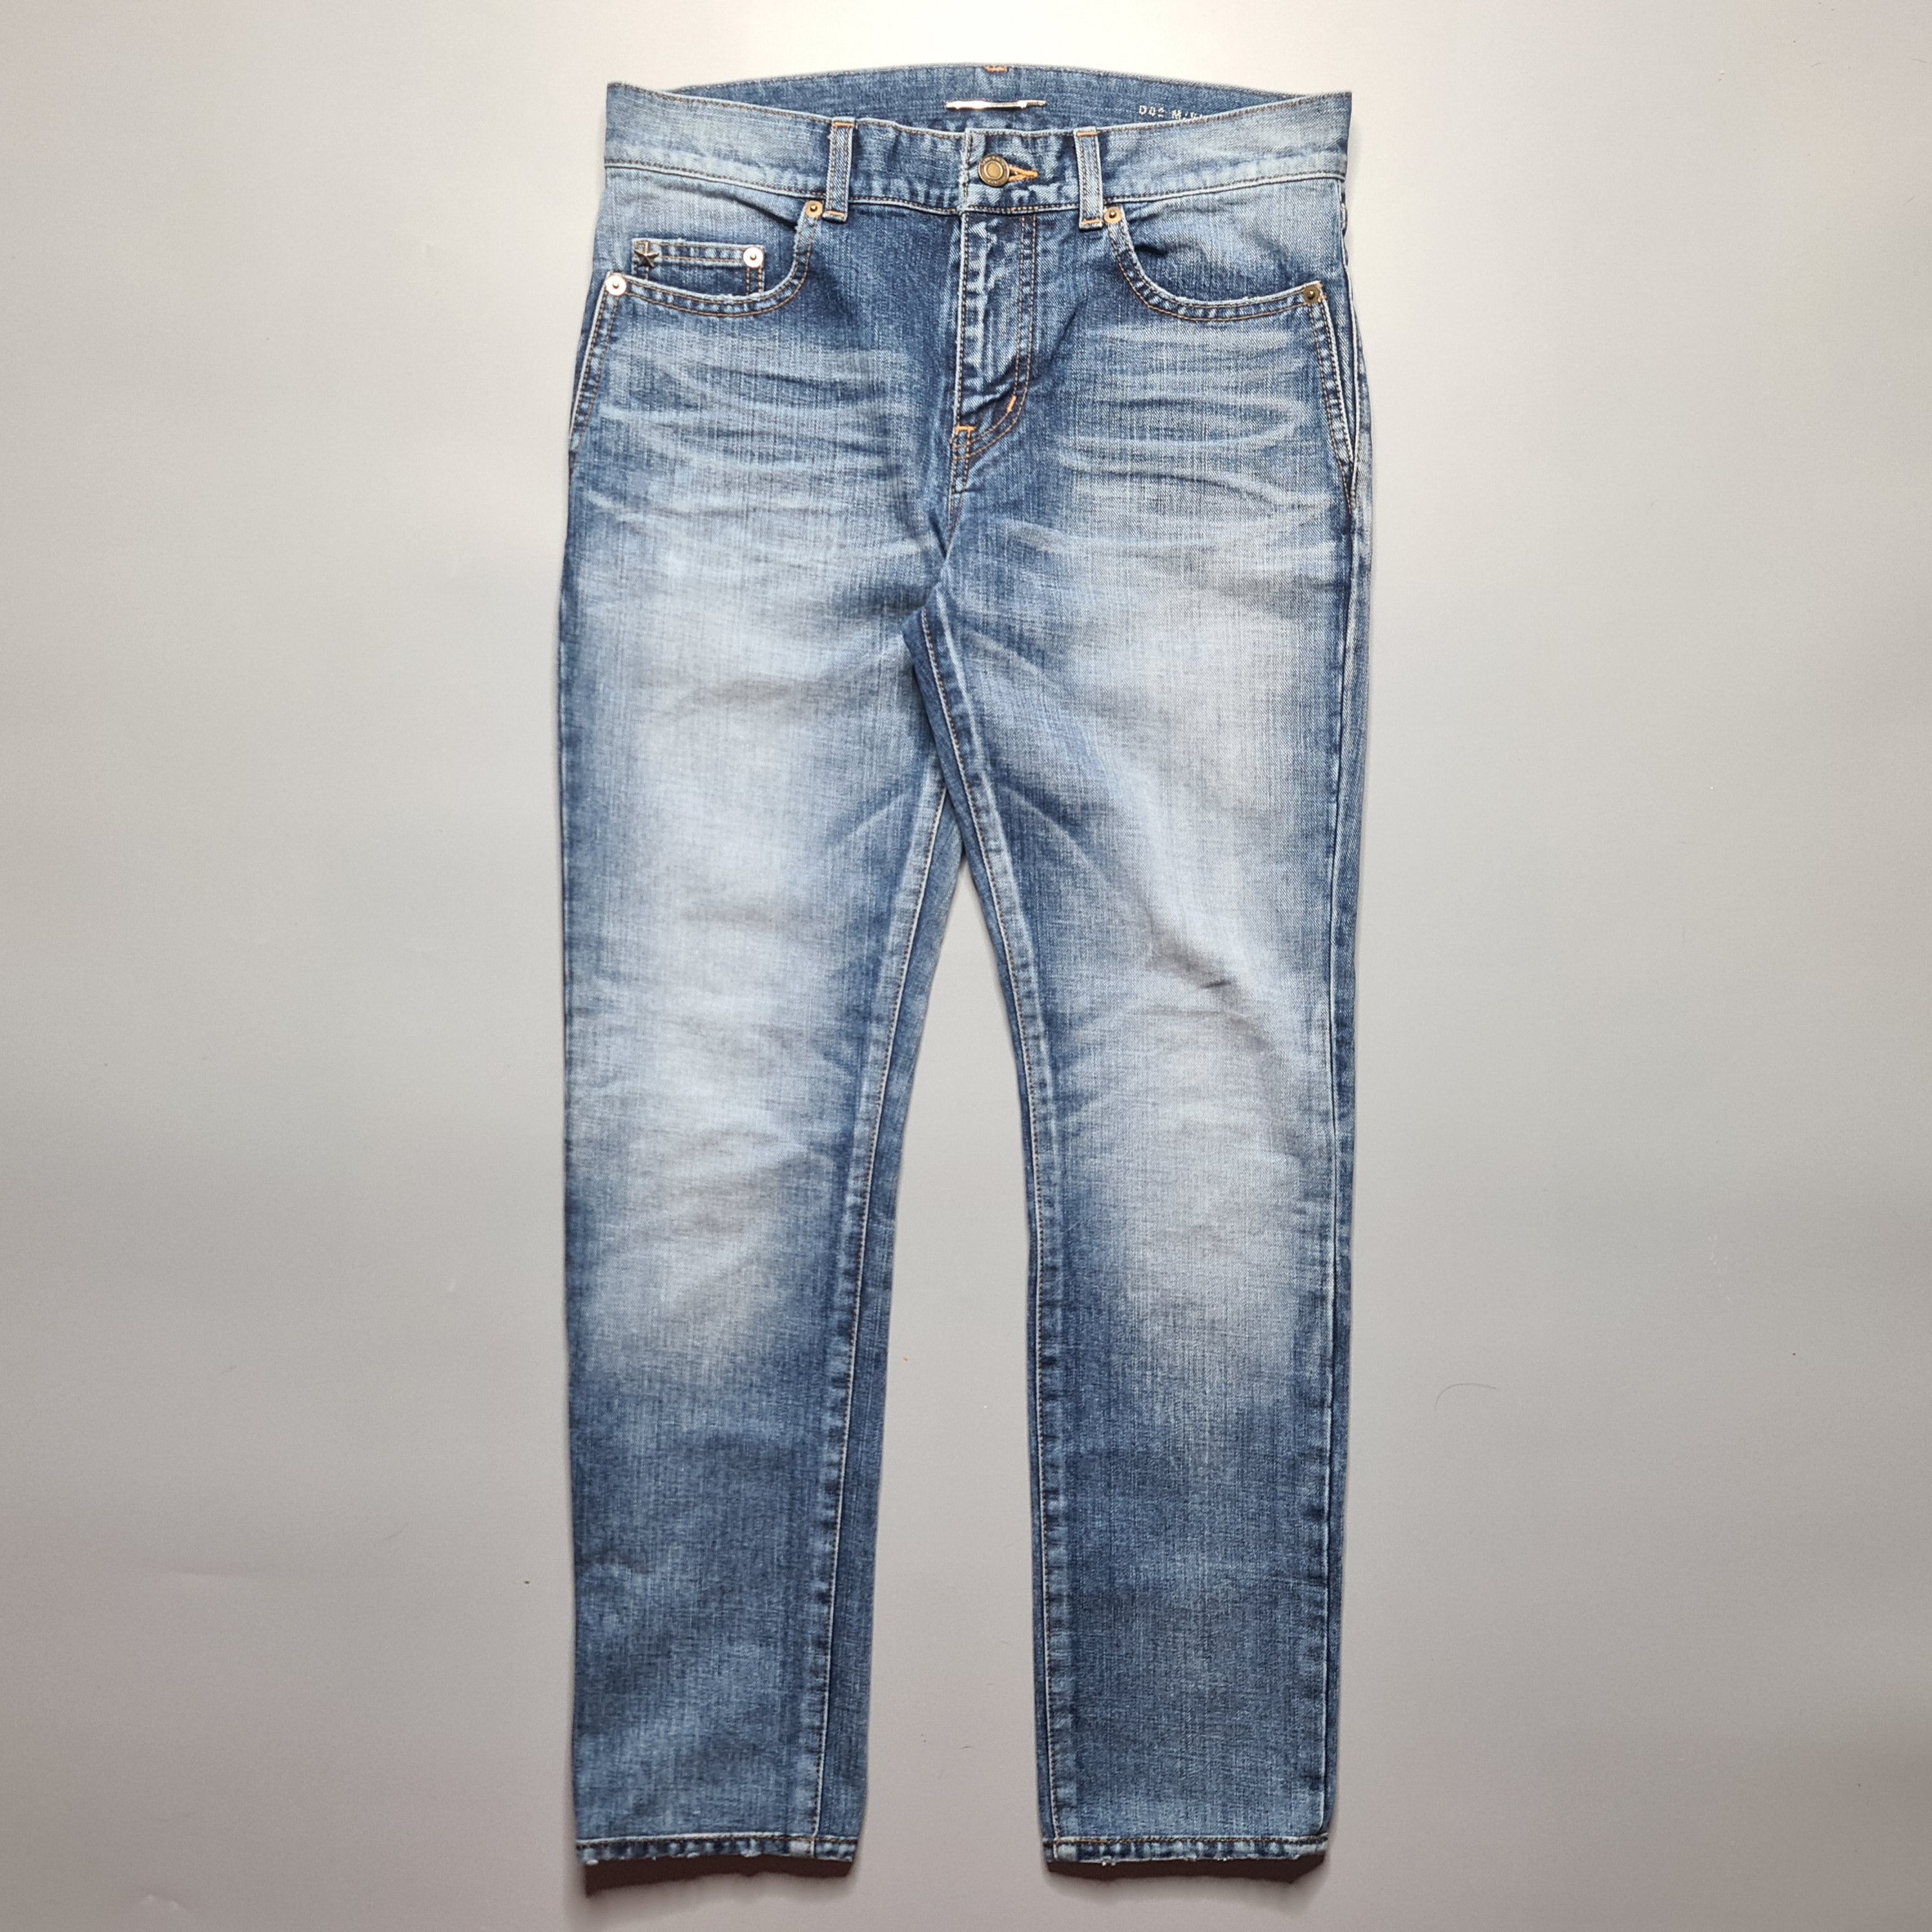 Saint Laurent Paris - AW17 D02 Blue Washed Skinny Jeans - 1